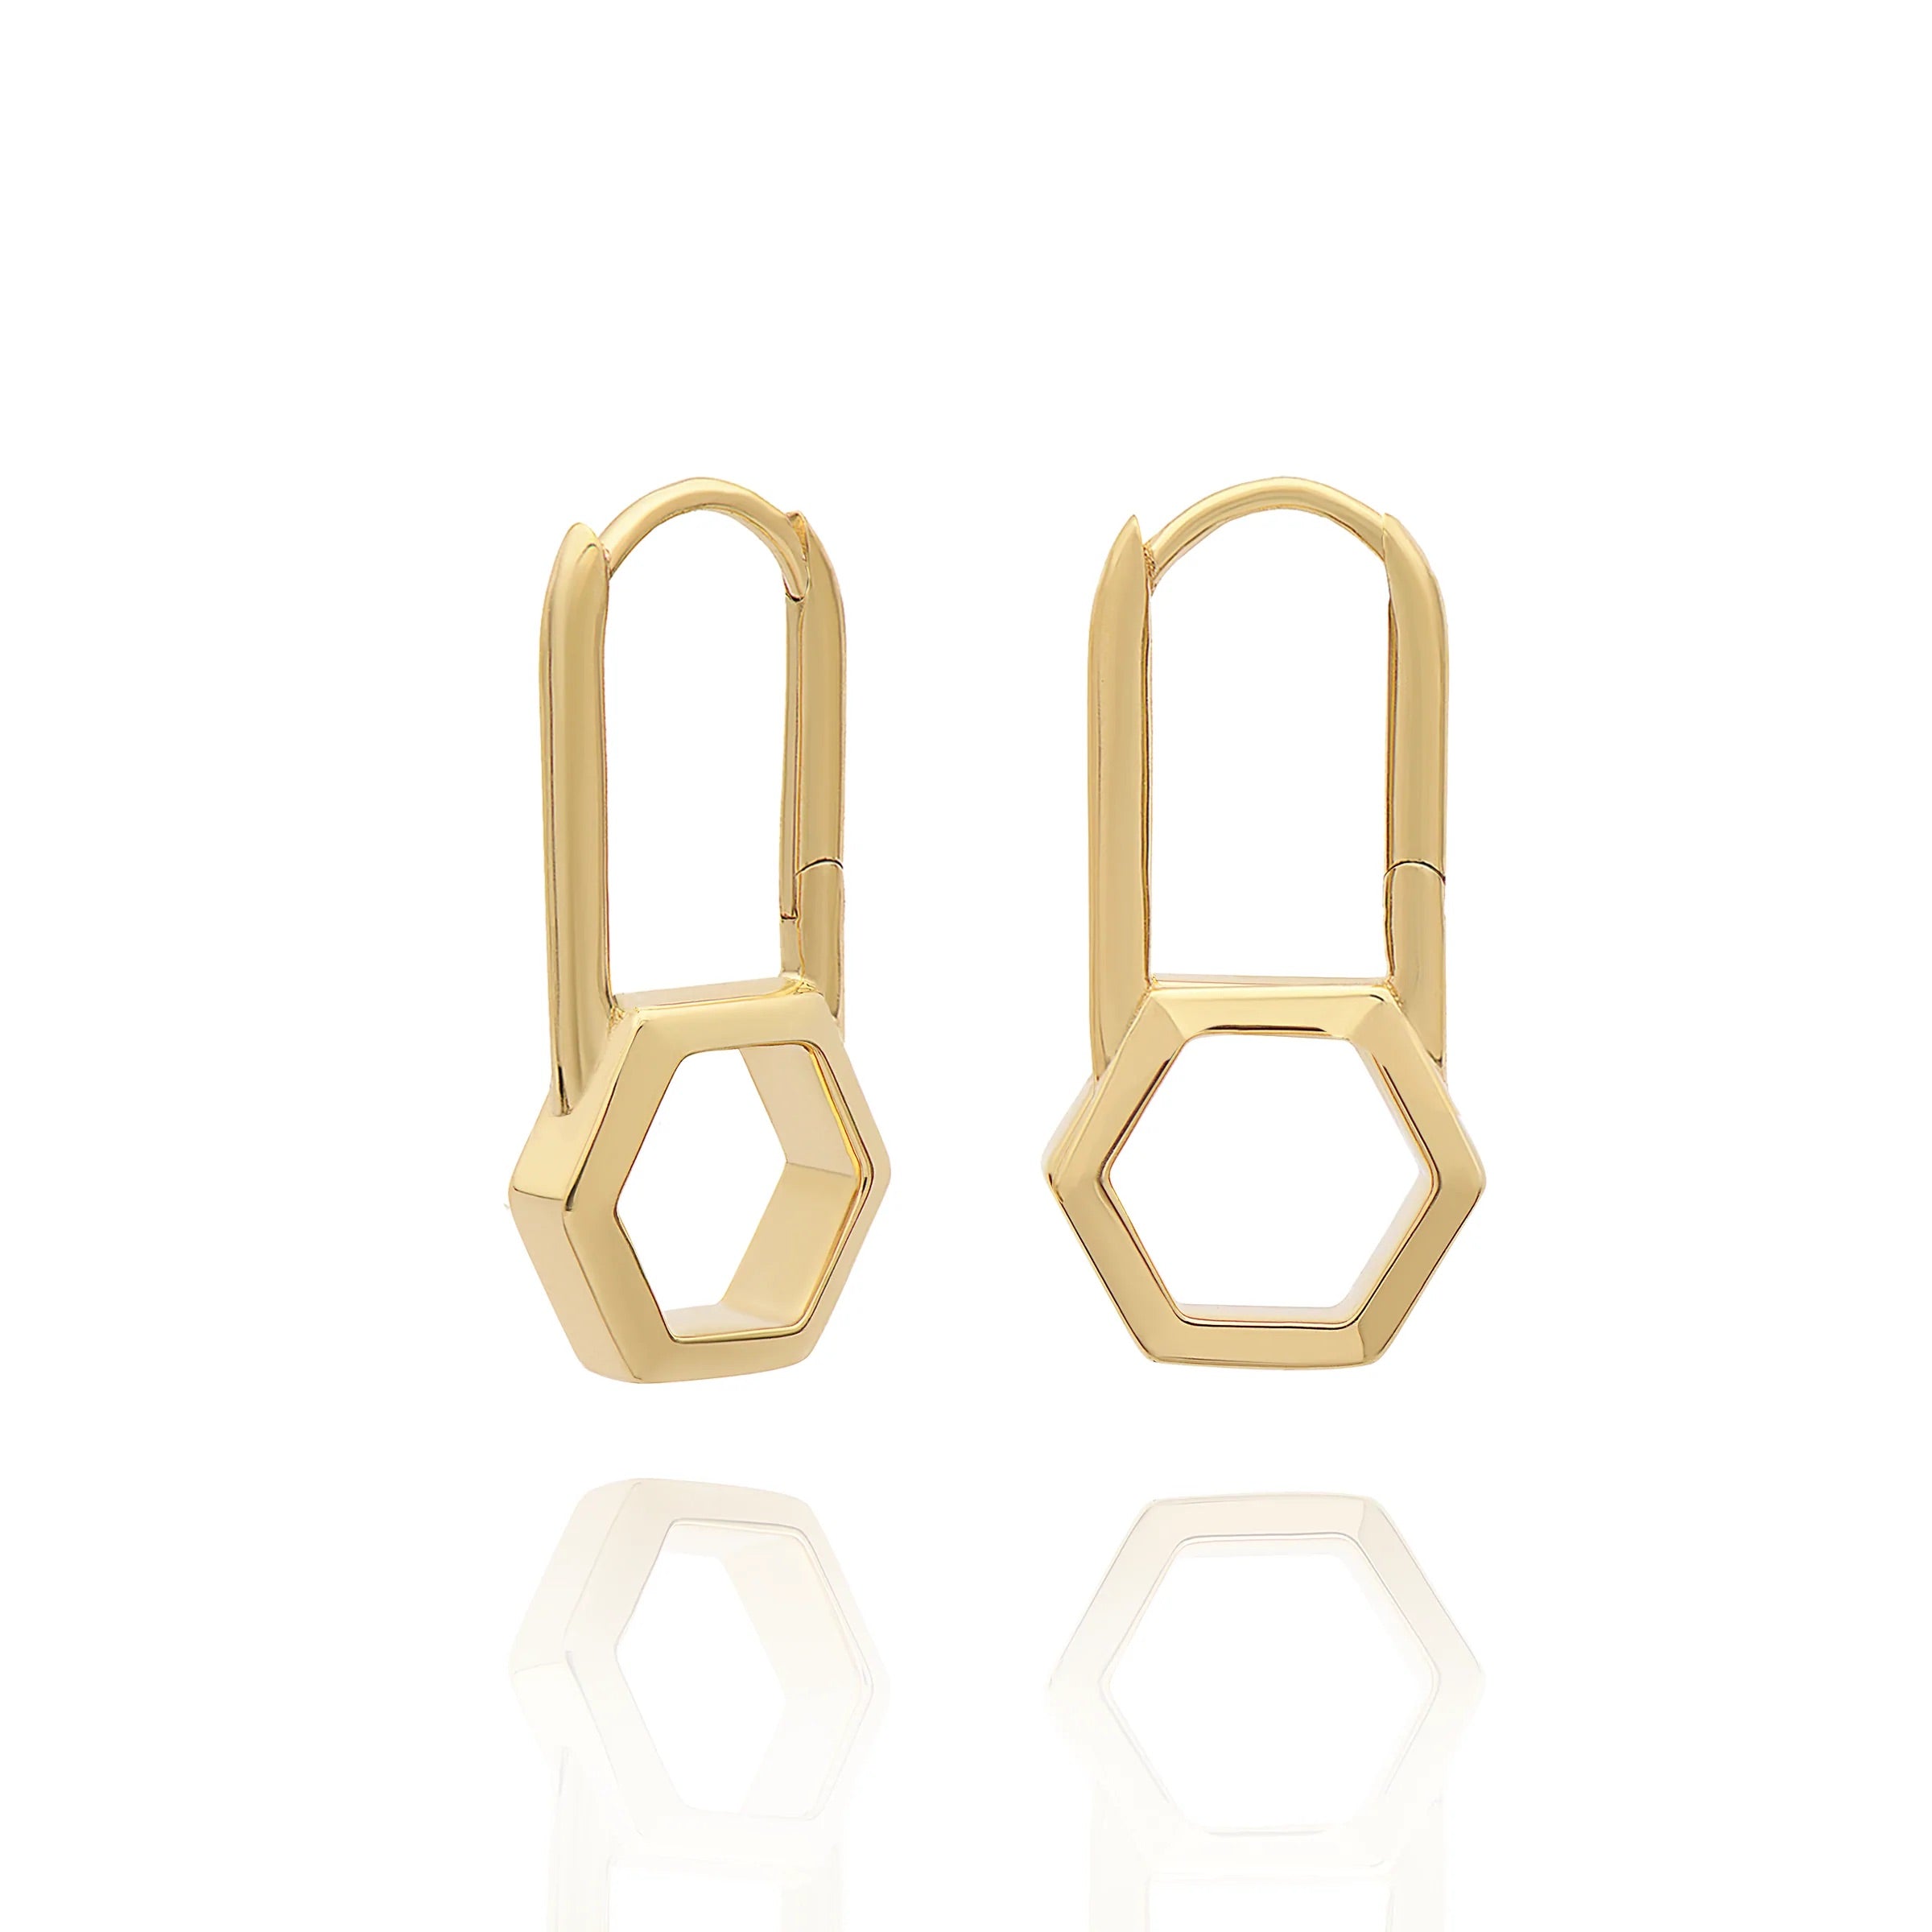 A pair of Rachel Jackson London Hex Padlock Hoops - Gold earrings.